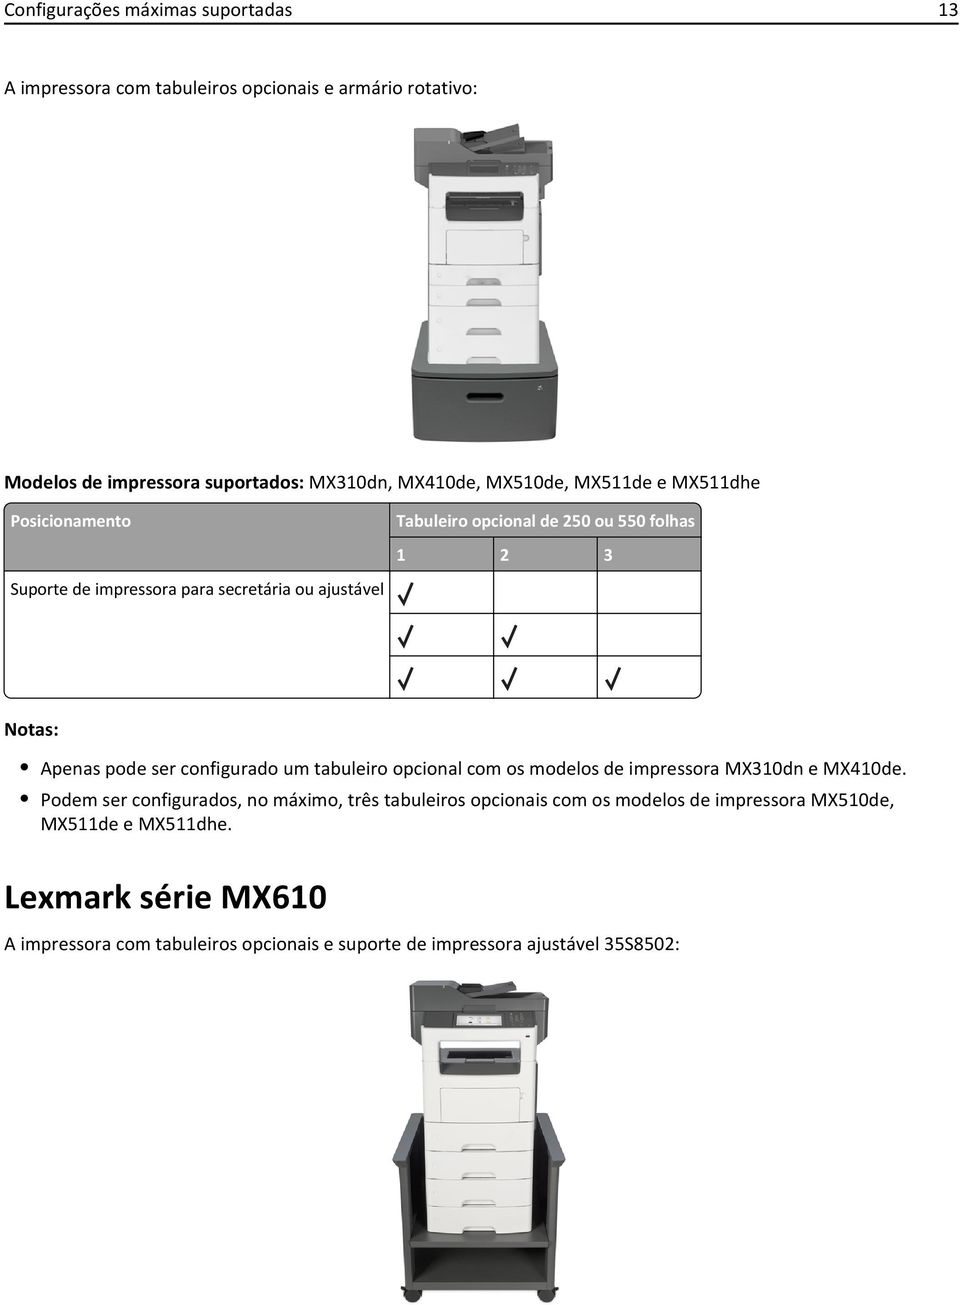 Apenas pode ser configurado um tabuleiro opcional com os modelos de impressora MX310dn e MX410de.